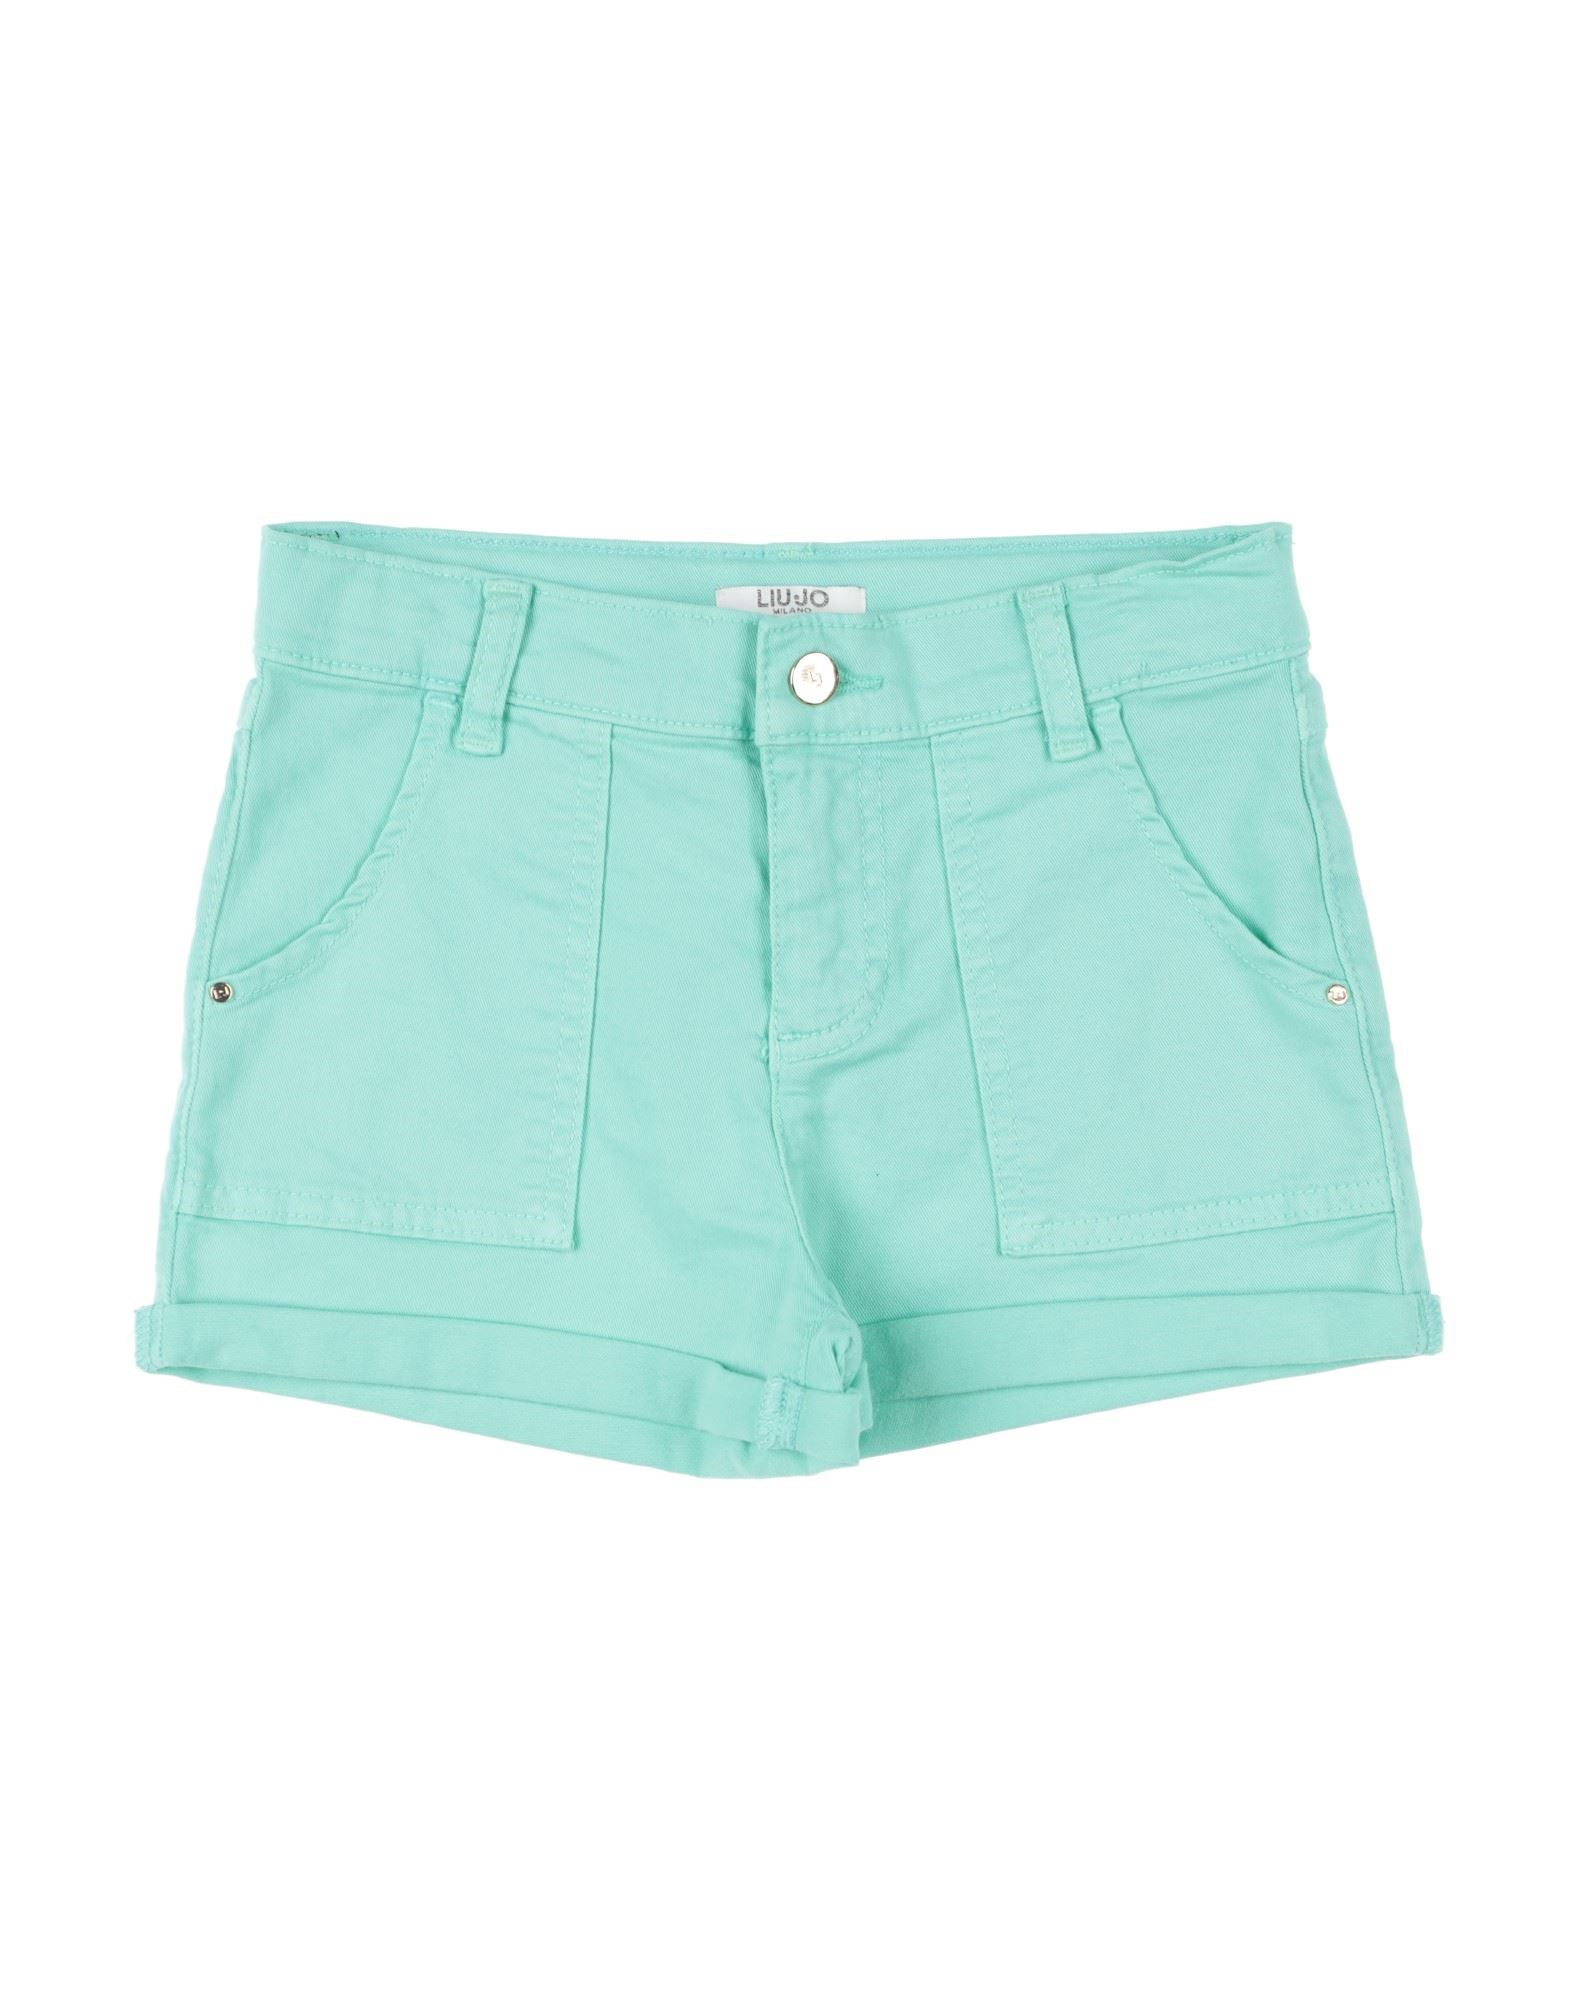 Liu •jo Kids'  Toddler Girl Shorts & Bermuda Shorts Turquoise Size 4 Cotton, Elastane In Blue